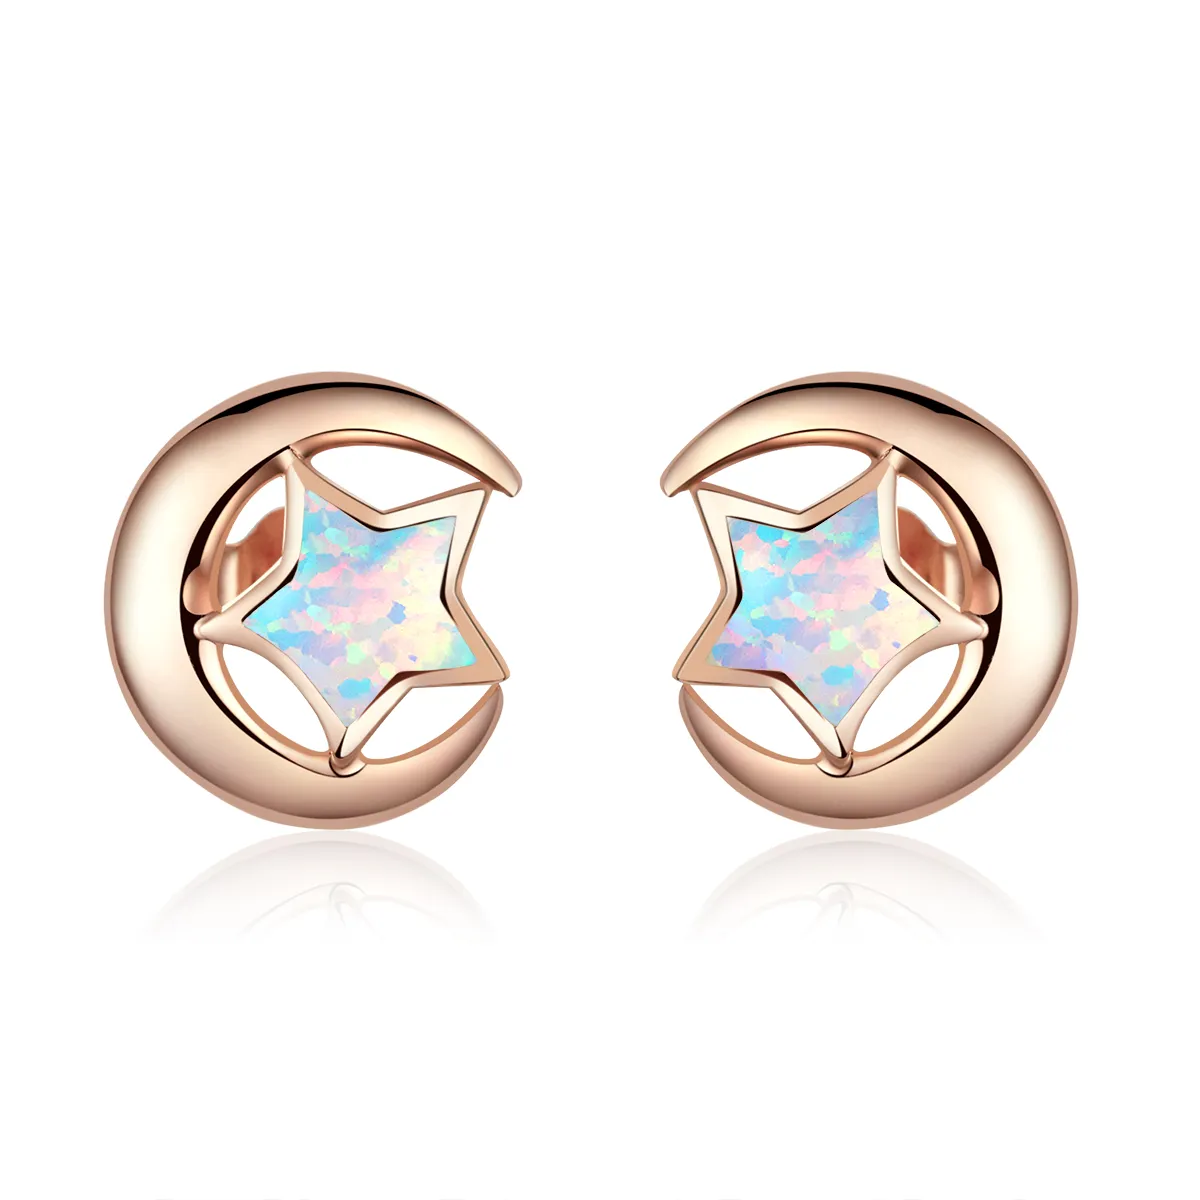 Pandora Style Opal Moon Stud Earrings - SCE816-C